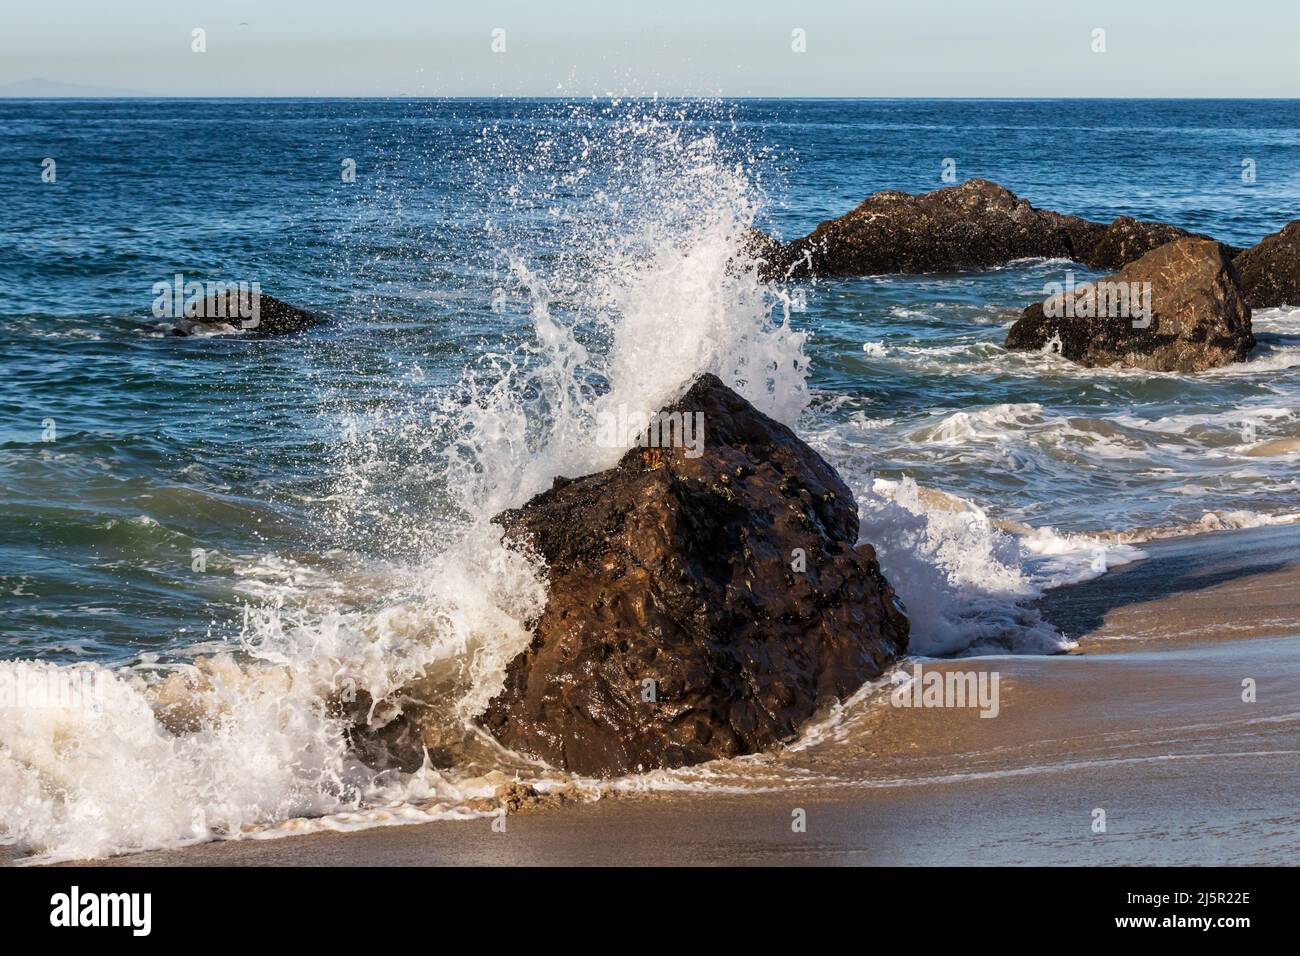 La vague s'est déferlante contre le rocher à Malibu, en Californie. L'eau s'étire de la plage. Océan Pacifique, ciel bleu à distance. Banque D'Images